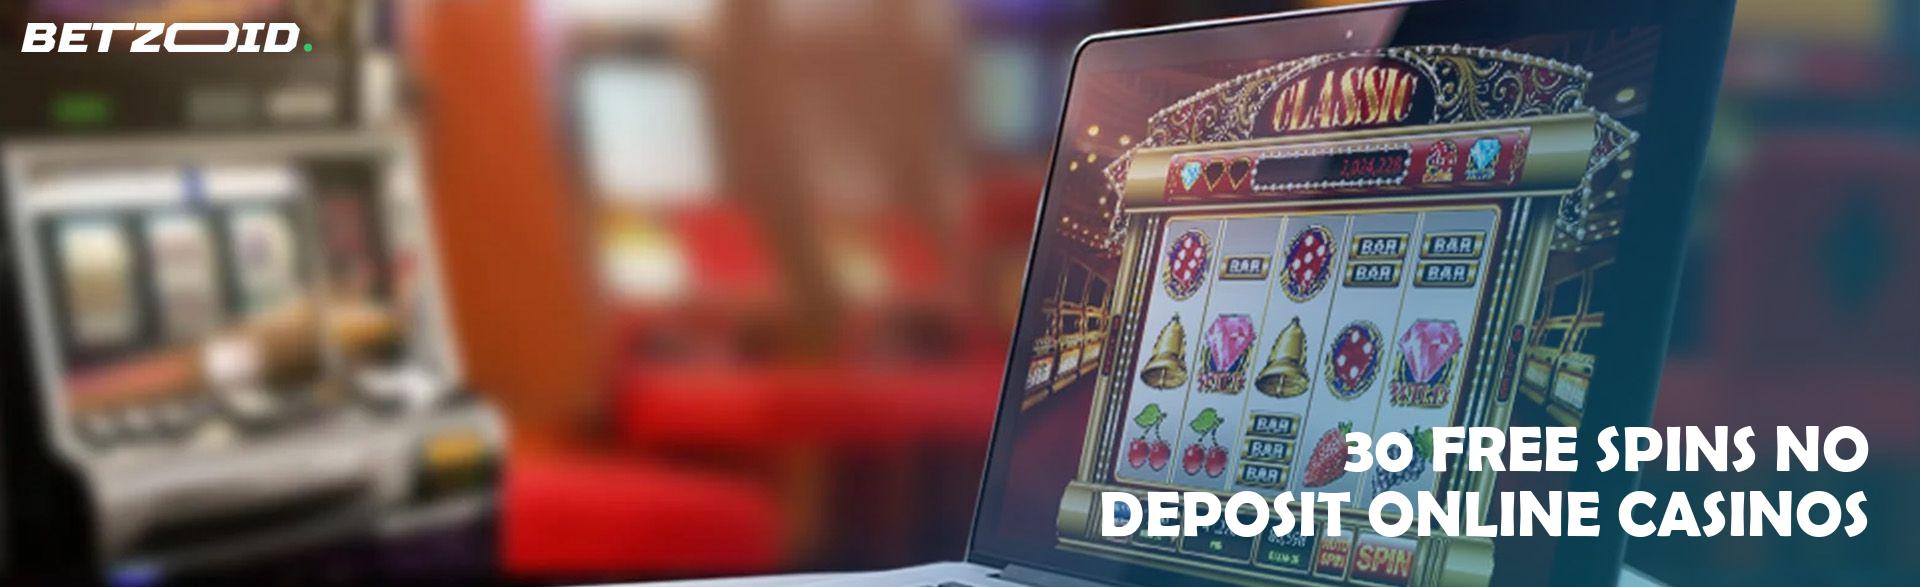 30 Free Spins No Deposit Online Casinos.